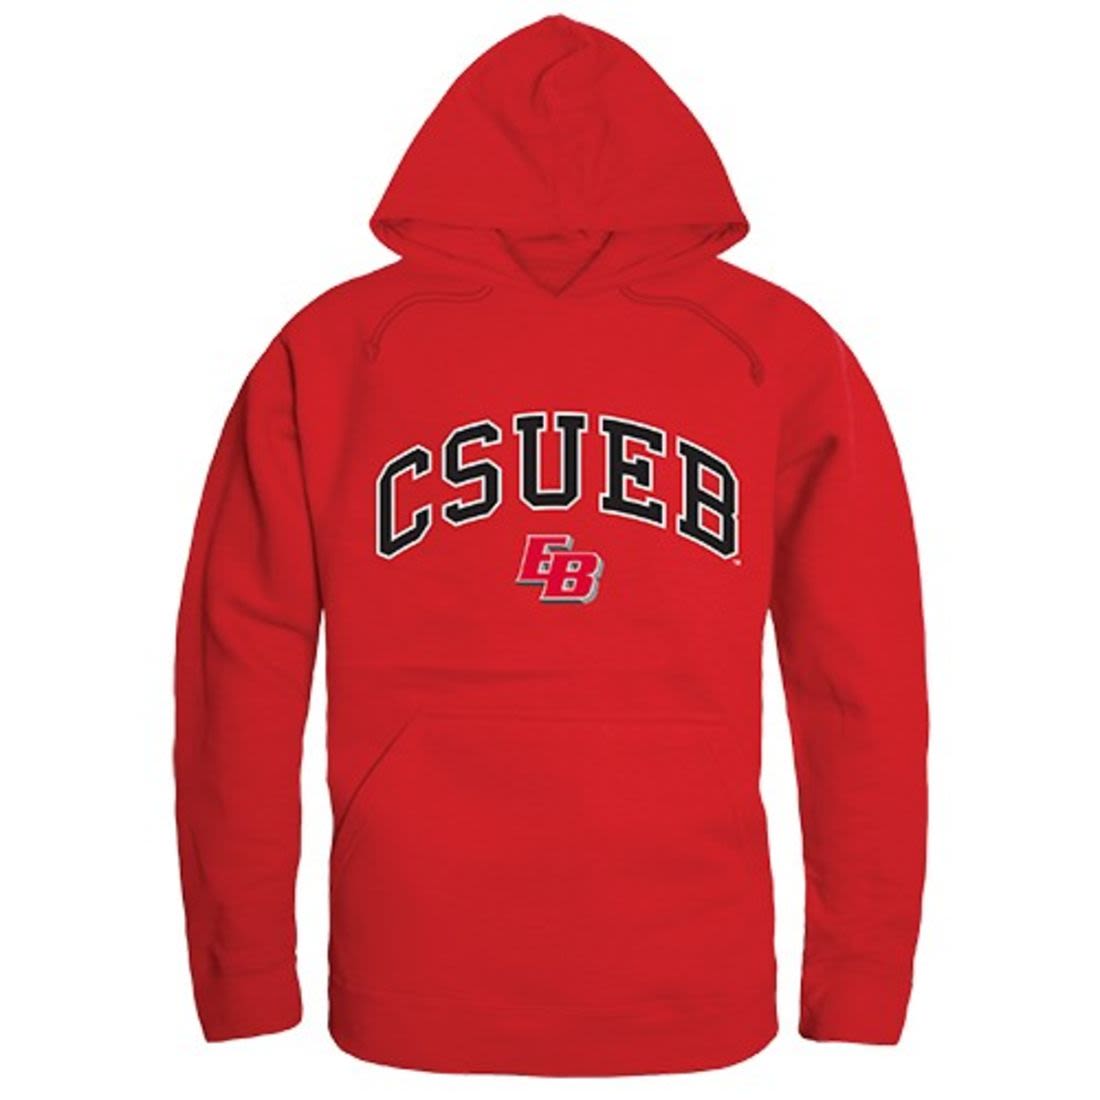 California State University, East Bay Pioneers Campus Hoodie Sweatshirt Red-Campus-Wardrobe